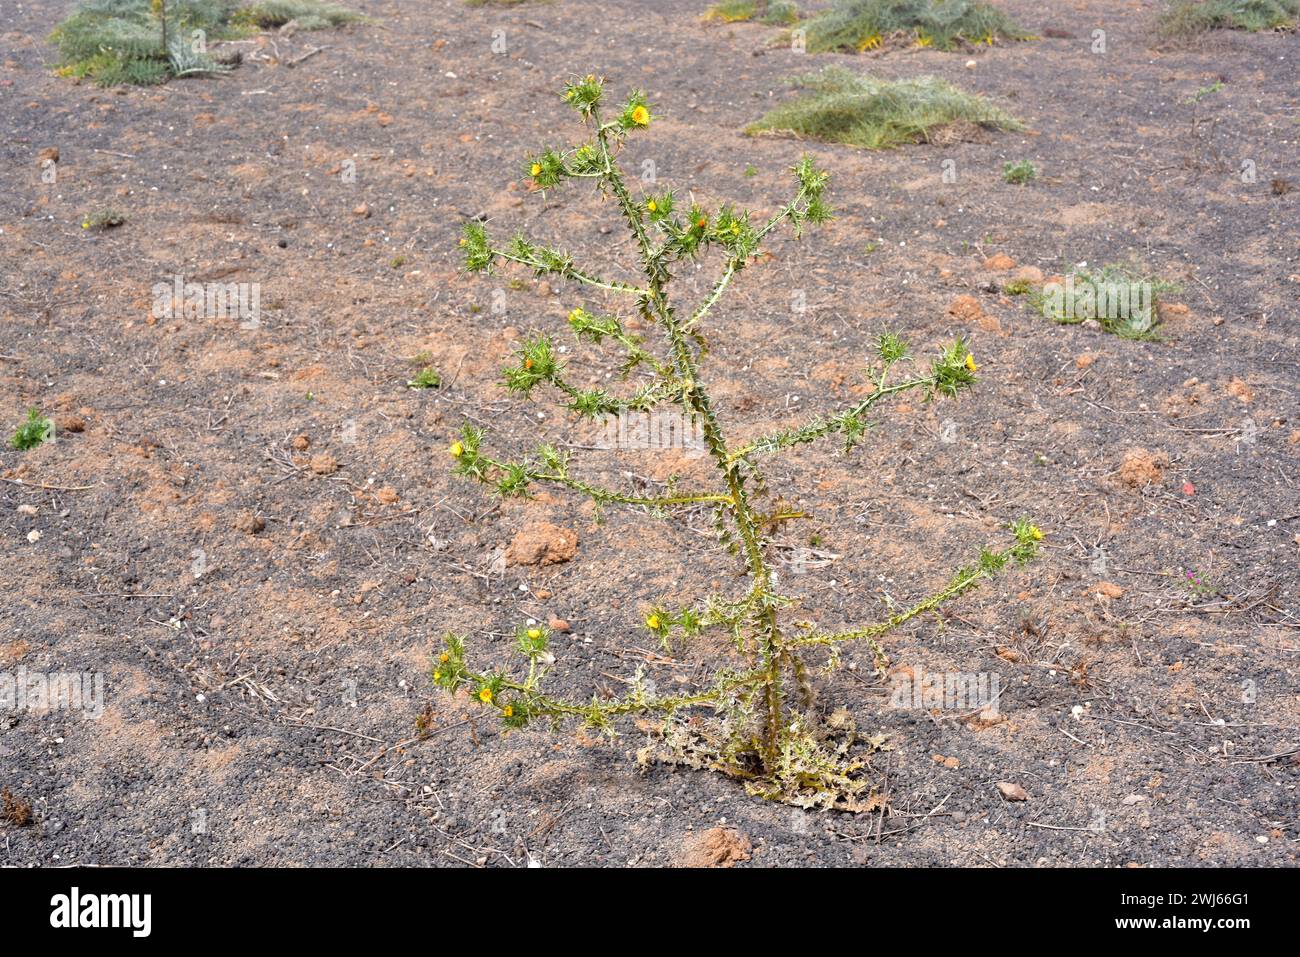 Die gefleckte Golddistel (Scolymus maculatus) ist eine einjährige Pflanze, die auf den Kanarischen Inseln, dem Mittelmeerbecken und Westasien beheimatet ist. Dieses Foto wurde aufgenommen Stockfoto